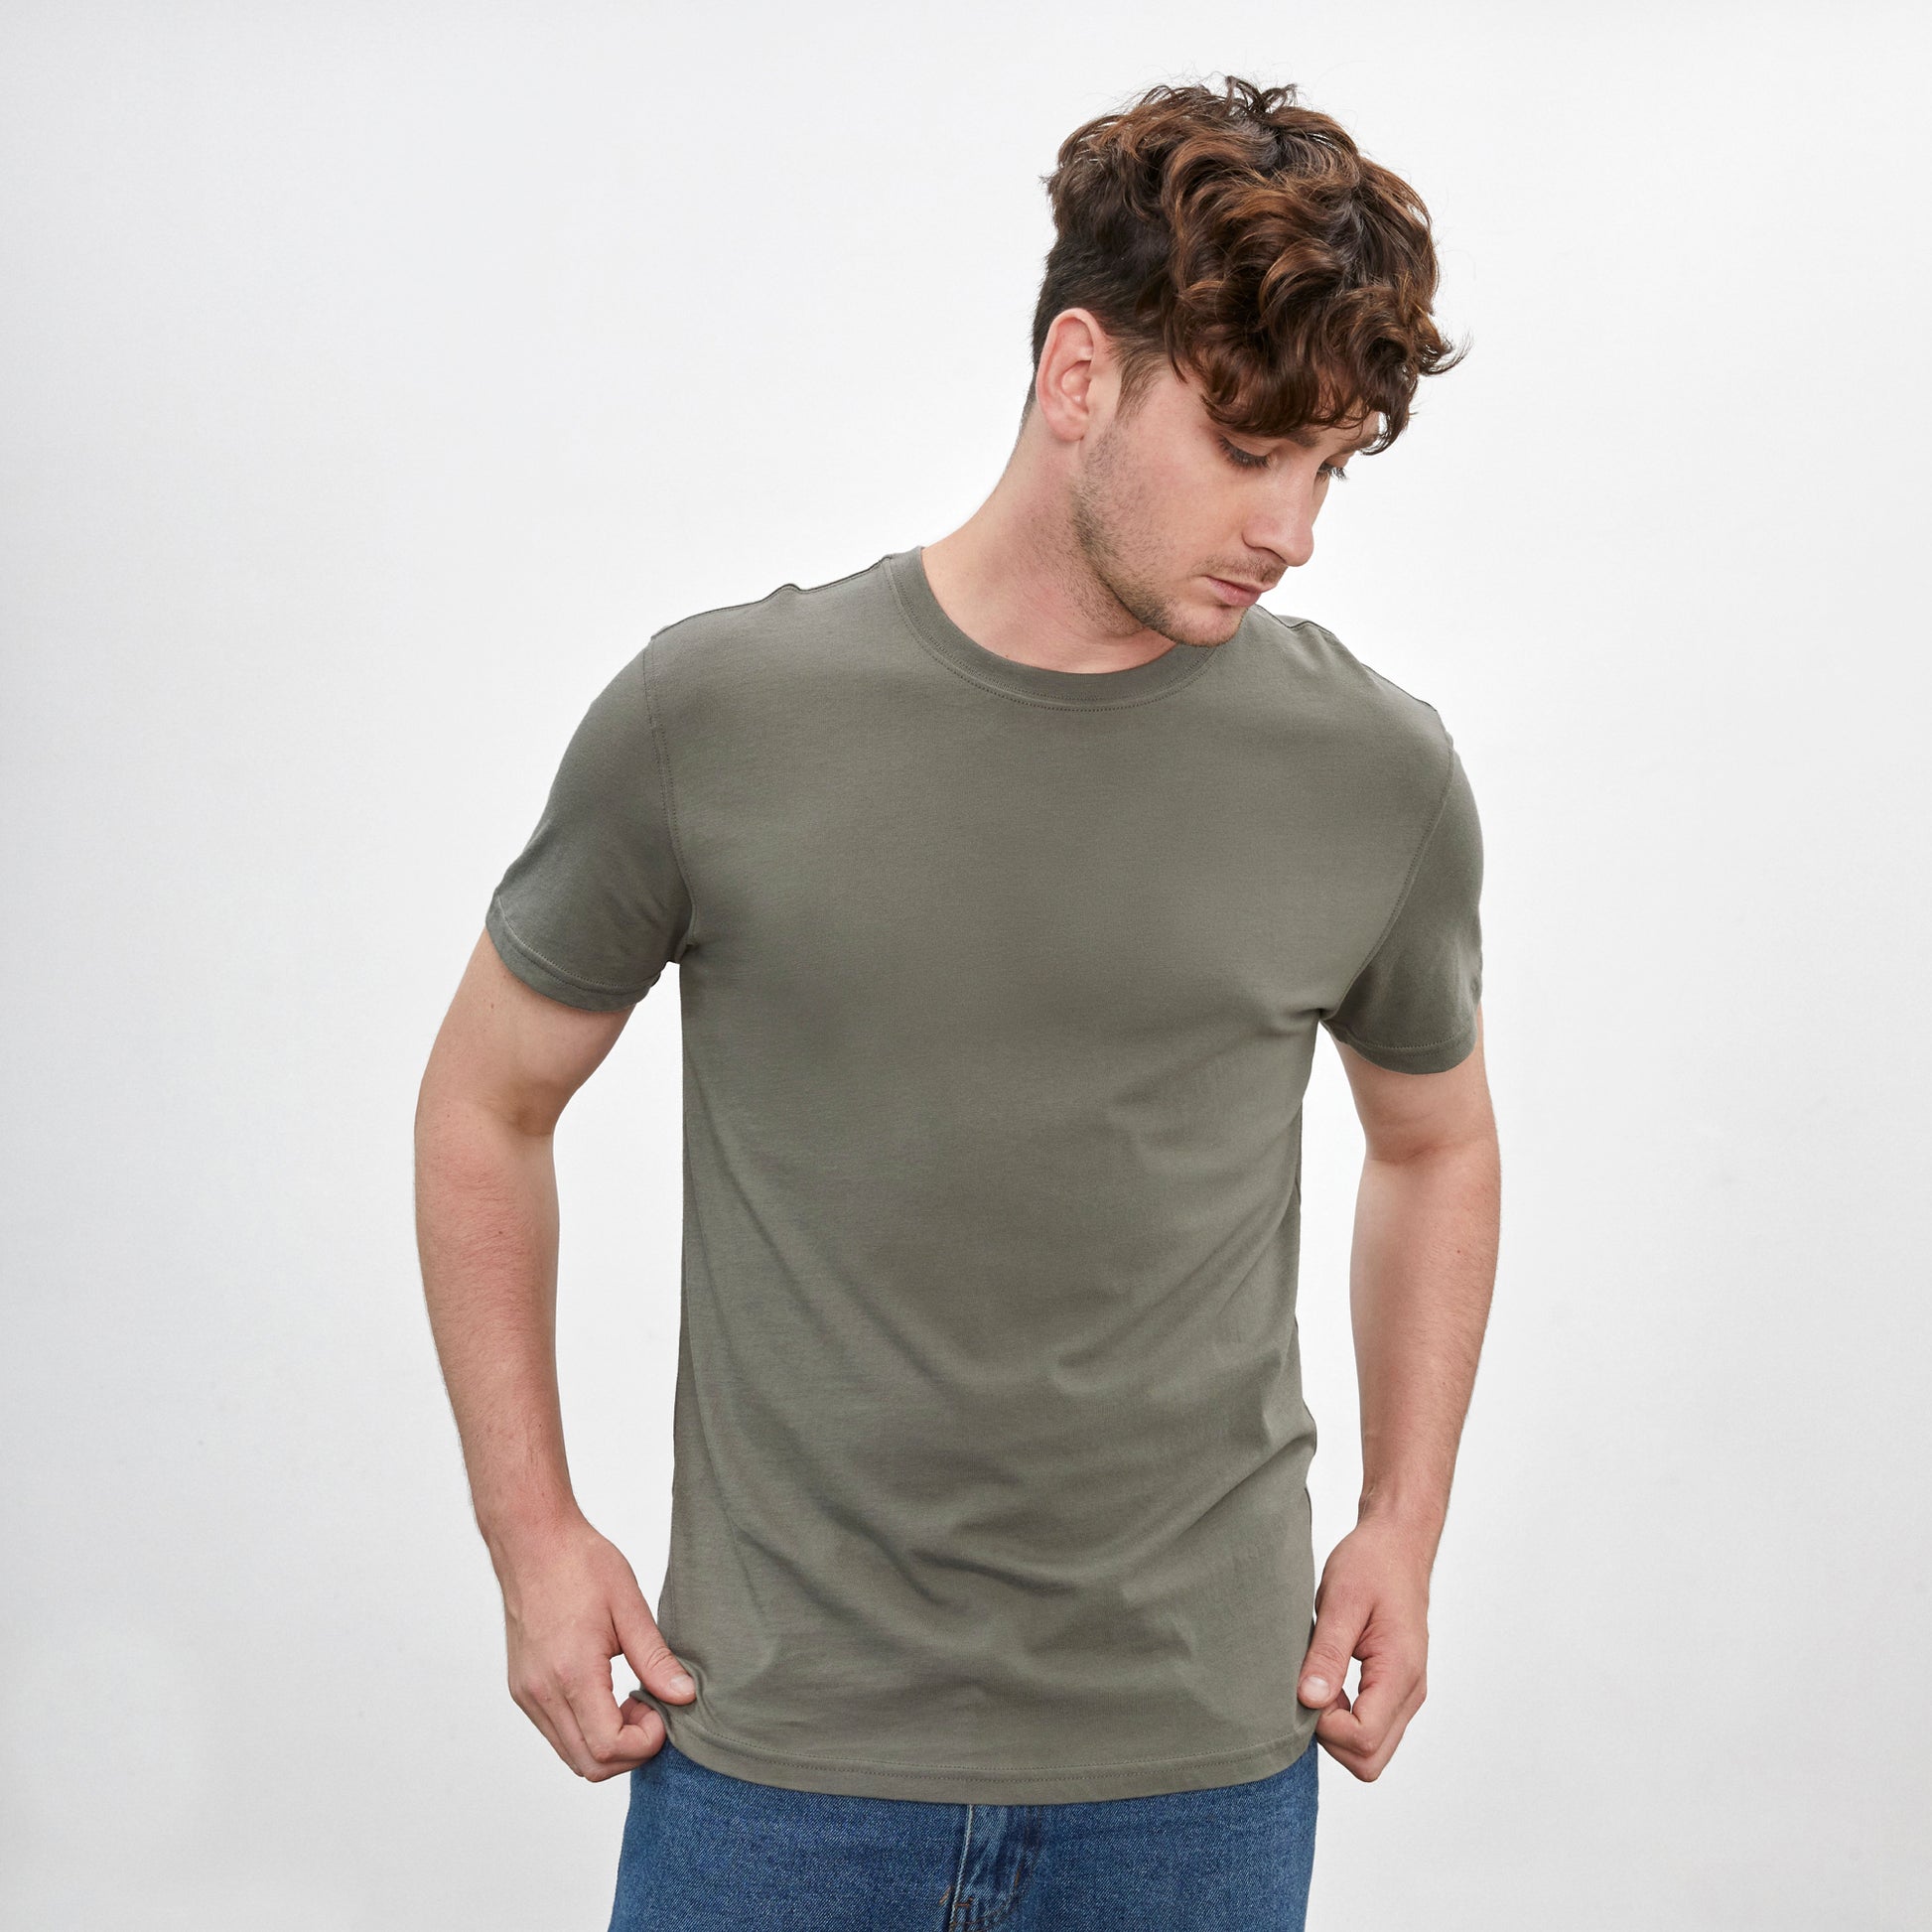 Polo verde olivo de cuello redondo y manga corta de algodón Pima, vista frontal con modelo